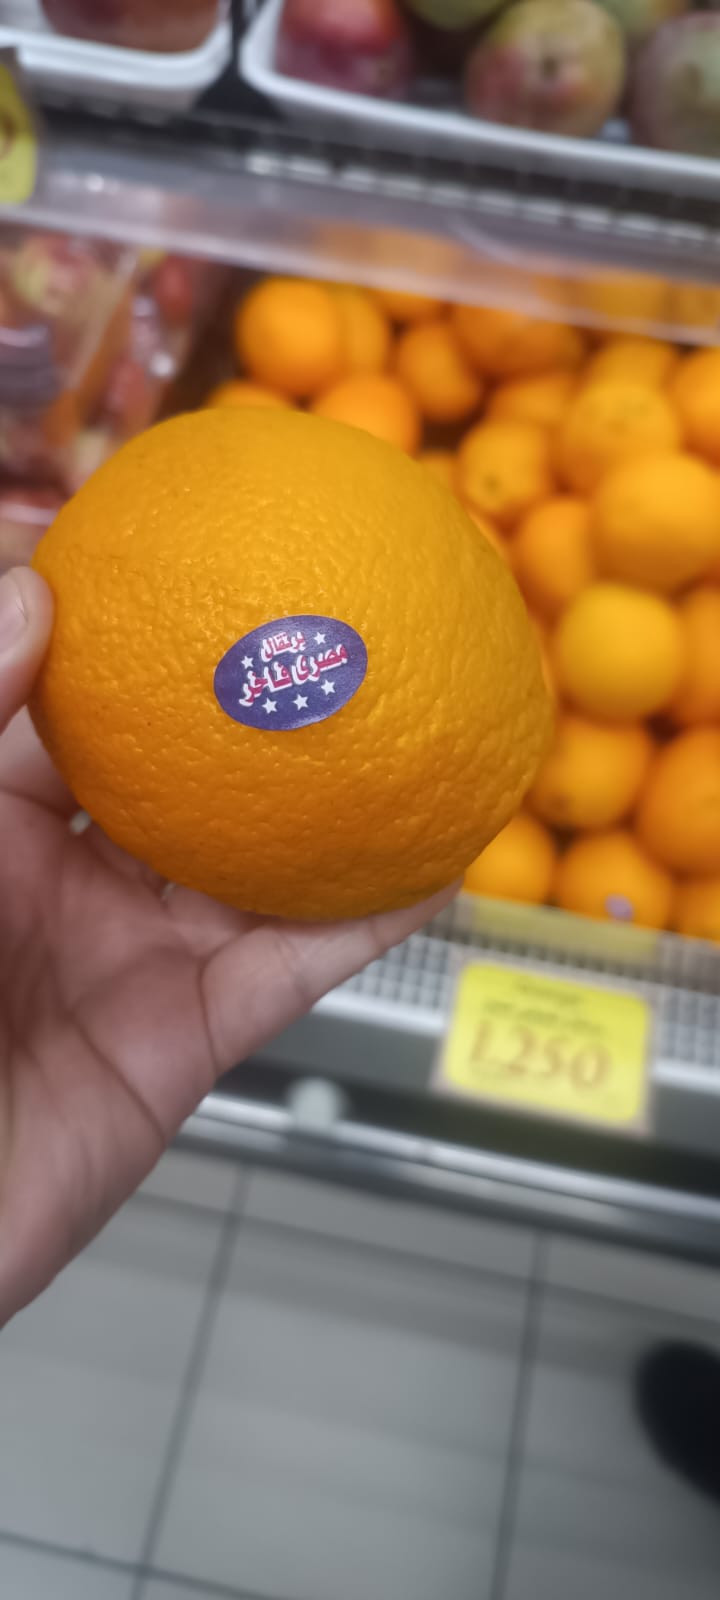 بيع البرتقال المصري في الأسواق الأردنية